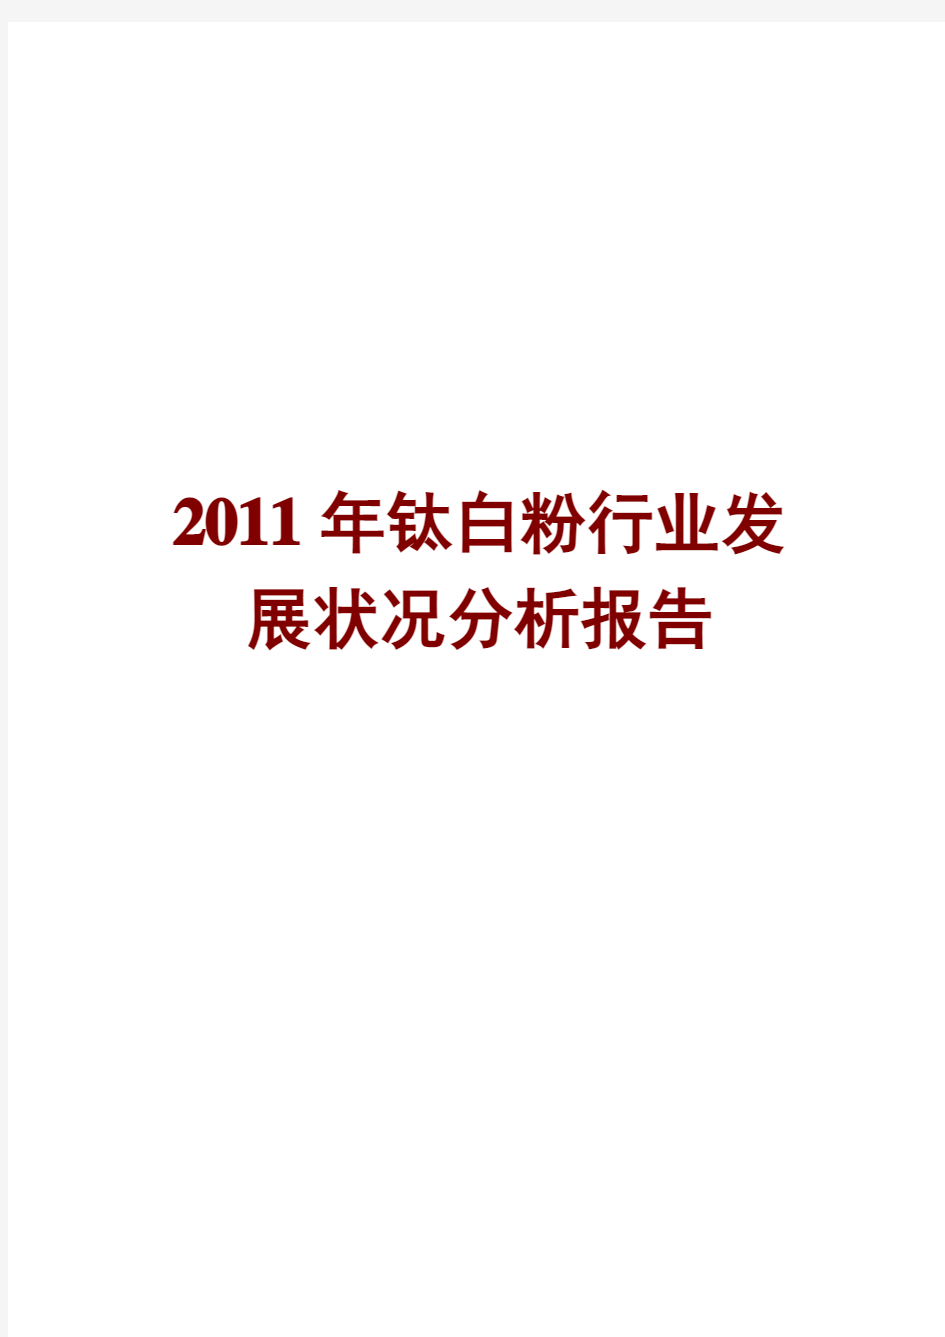 钛白粉行业发展状况分析报告2011